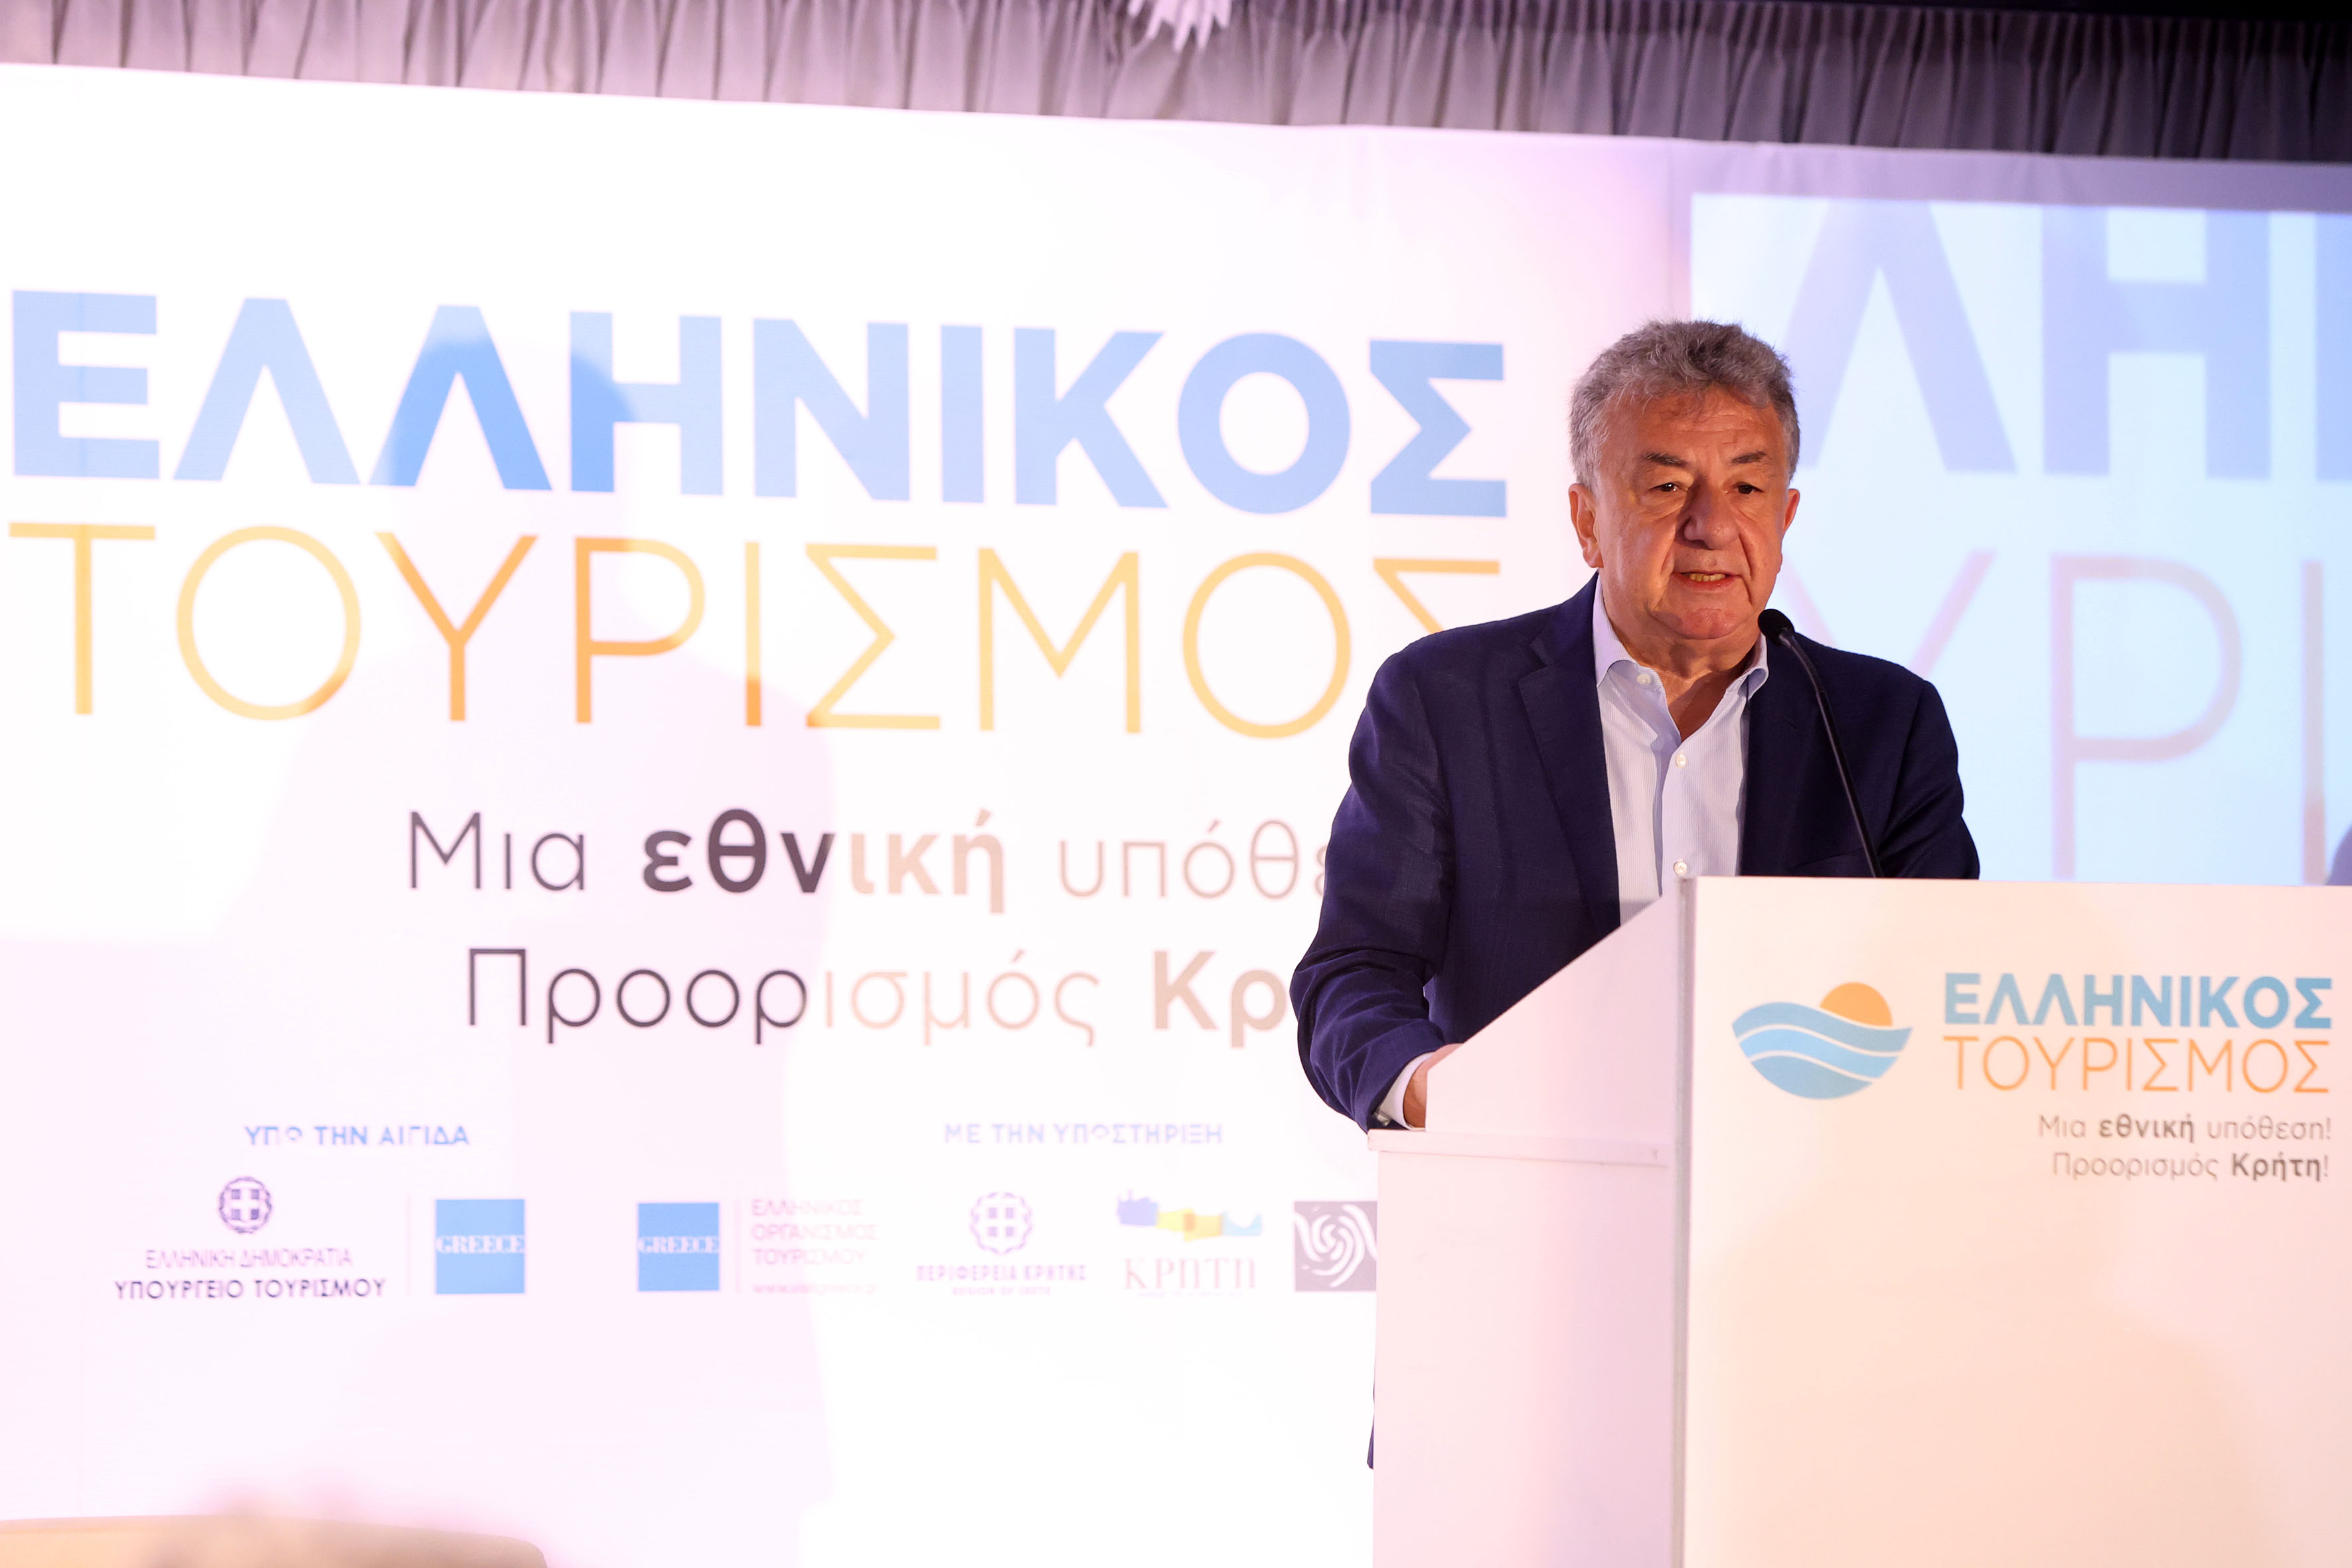 Σε εξέλιξη στο Ηράκλειο το συνέδριο με θέμα «Ελληνικός Τουρισμός, μια Εθνική Υπόθεση! Προορισμός Κρήτη!» 